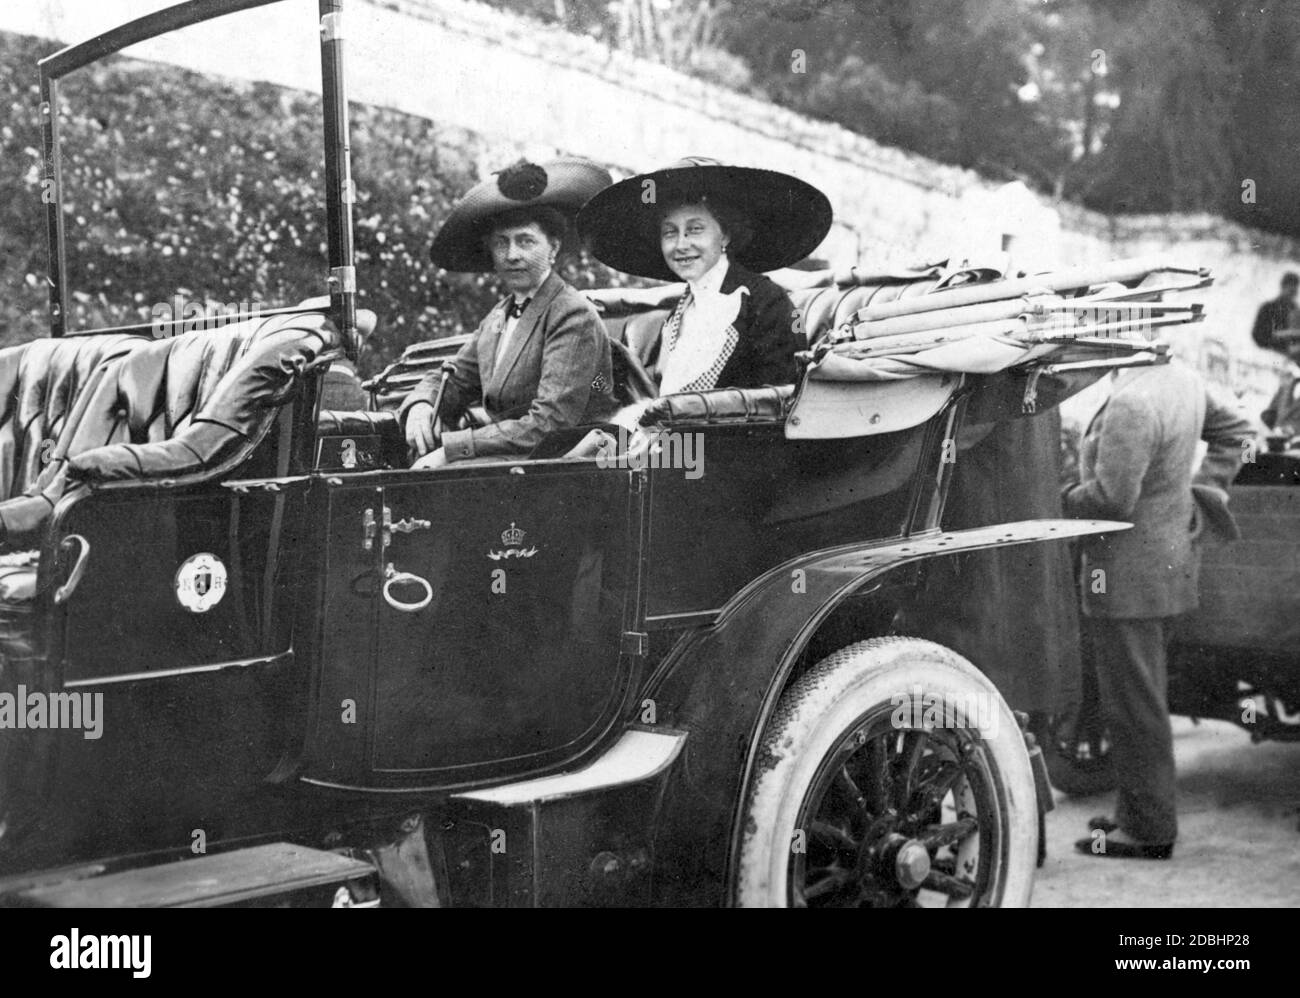 Die kaiserliche Familie reiste 1912 nach Korfu. Auf dem Bild sitzt Prinzessin Victoria Louise von Preußen (rechts) mit ihrer Tante, Kronprinzessin Sophie von Griechenland (links, geb. Preußen, später Königin von Griechenland) kurz vor einem Ausgang im Auto. Das Wappen des Kaiserlichen Automobil-Clubs hängt an der Vordertür des Wagens. Stockfoto